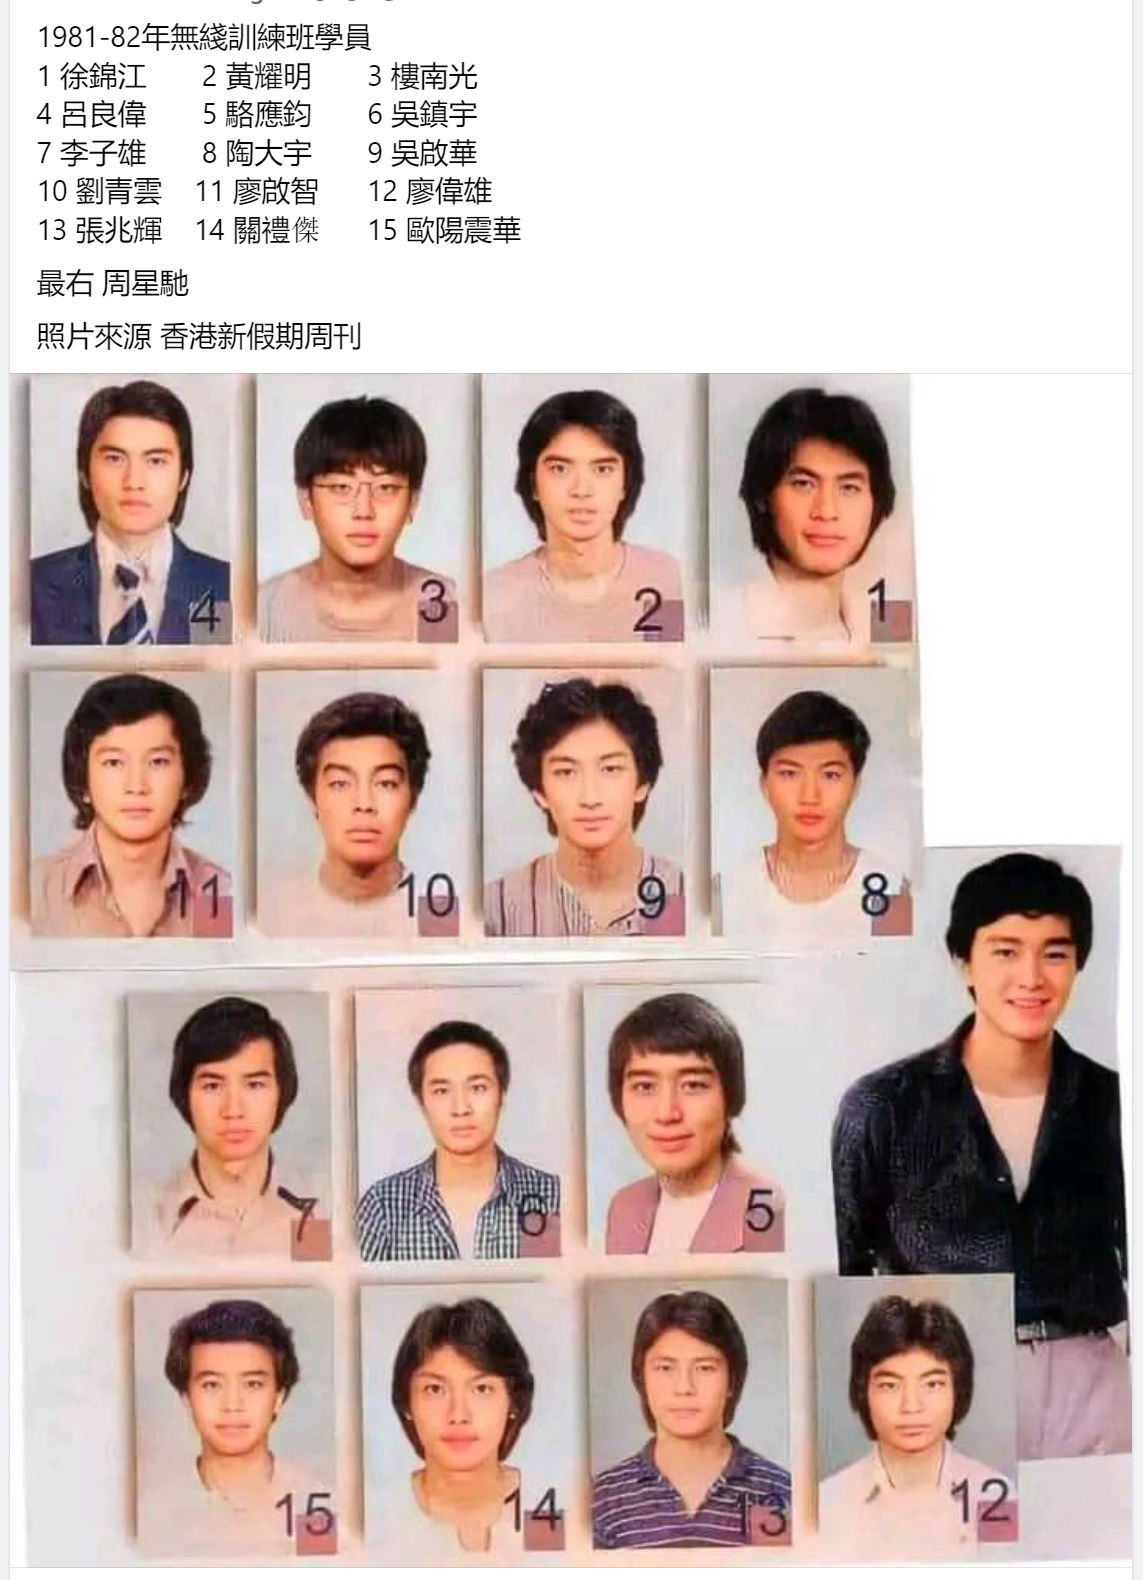 1981 TVB Star.png